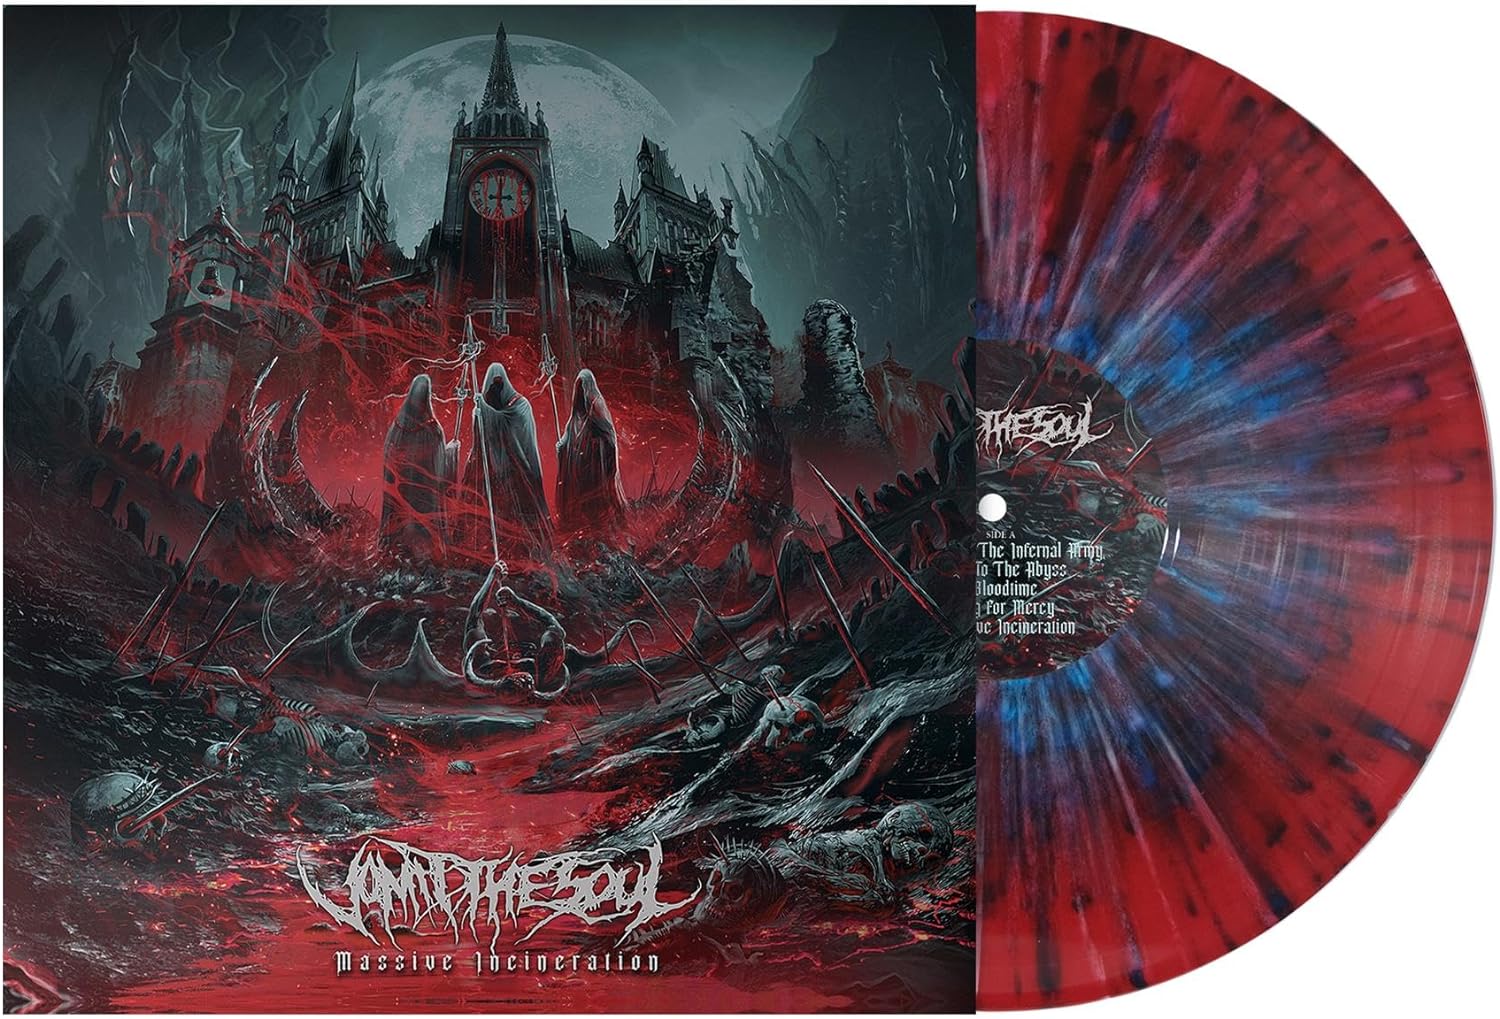 Vomit The Soul "Massive Incineration" Splatter Vinyl - PRE-ORDER